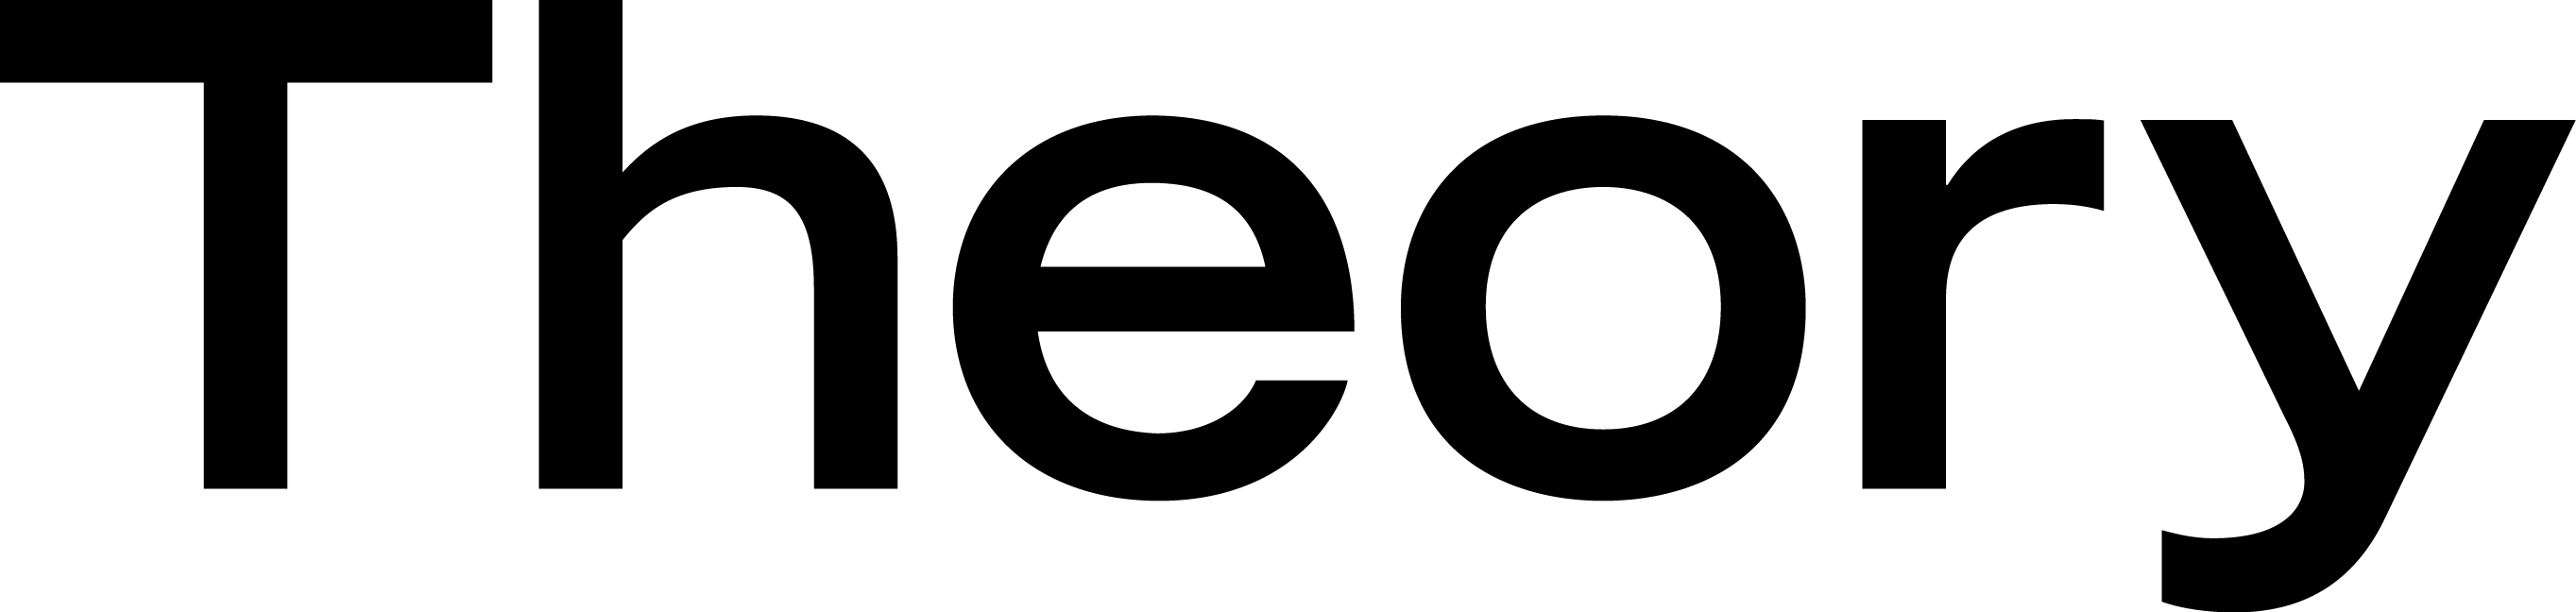 Theory logo